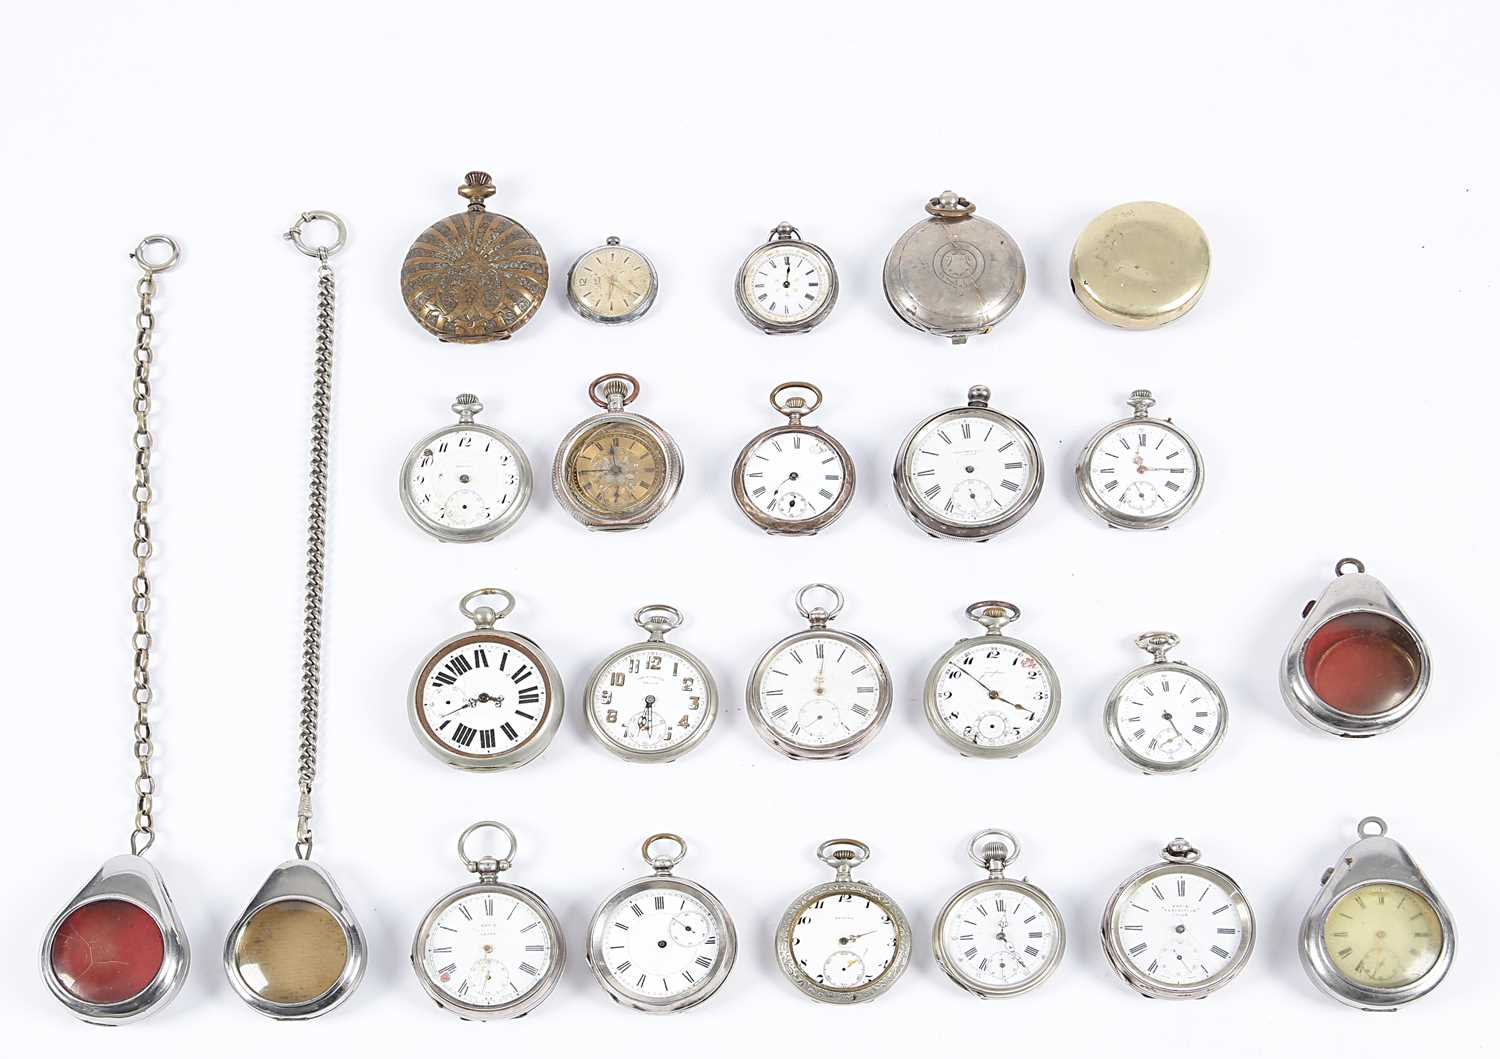 Lot 6 - Collectie diverse zakhorloges en horloge houders (rond 1900).